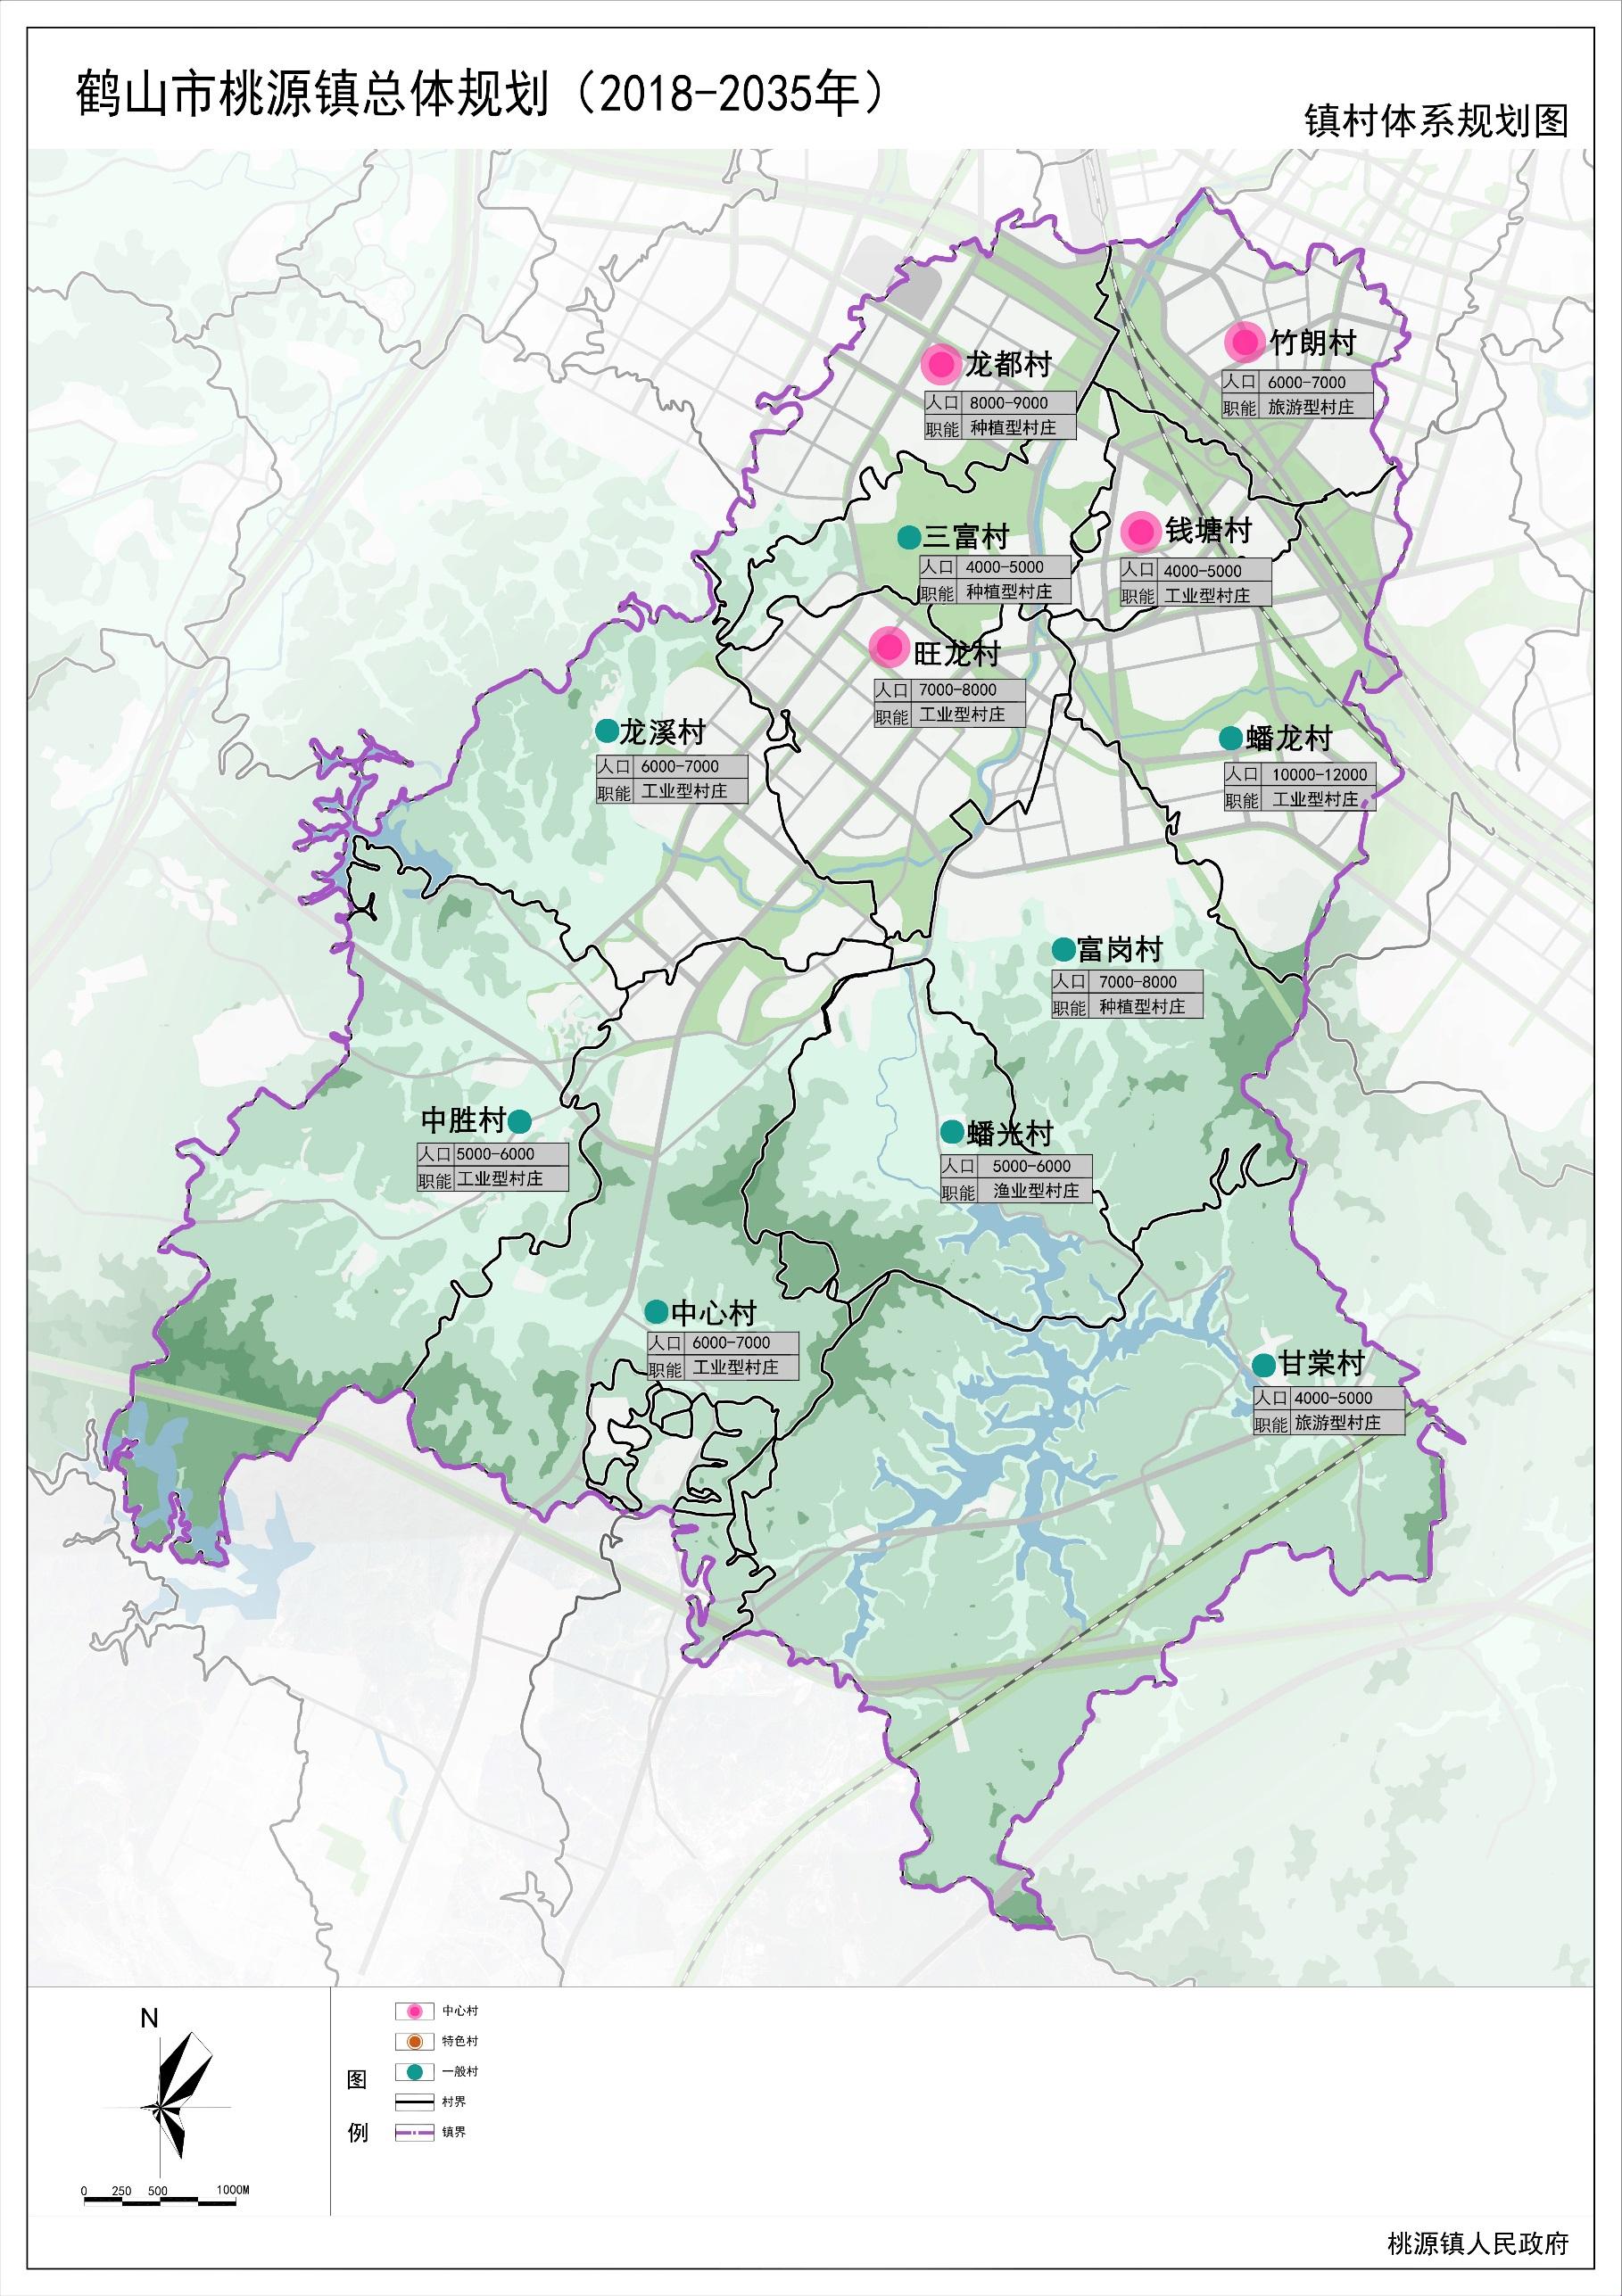 《鹤山市桃源镇总体规划(2018～2035年)》 主要内容